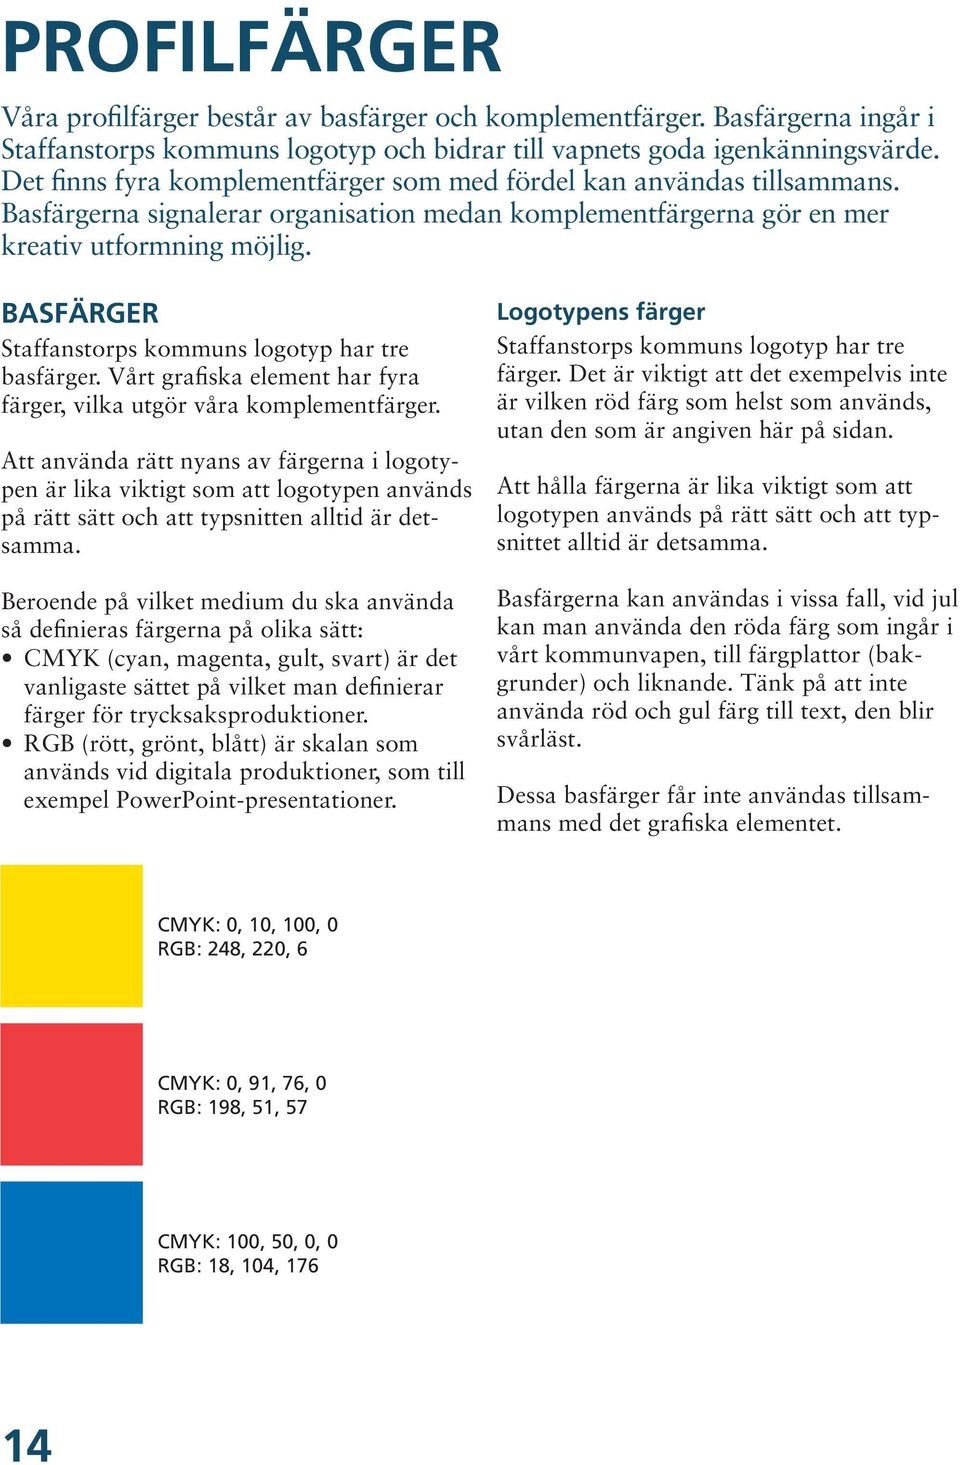 BASFÄRGER Staffanstorps kommuns logotyp har tre basfärger. Vårt grafiska element har fyra färger, vilka utgör våra komplementfärger.